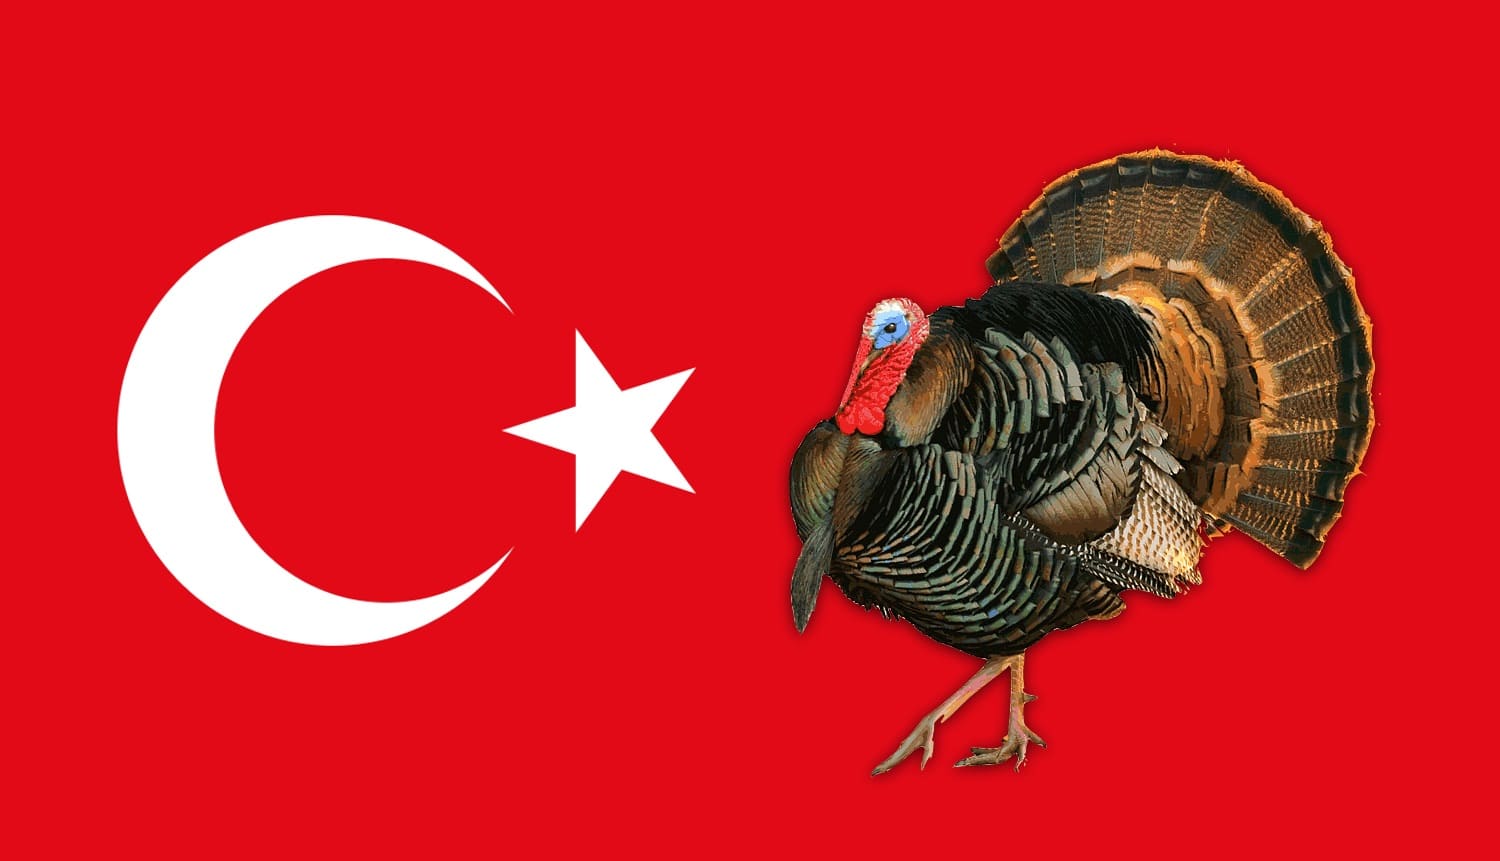 Почему Турция и индейка по-английски — turkey